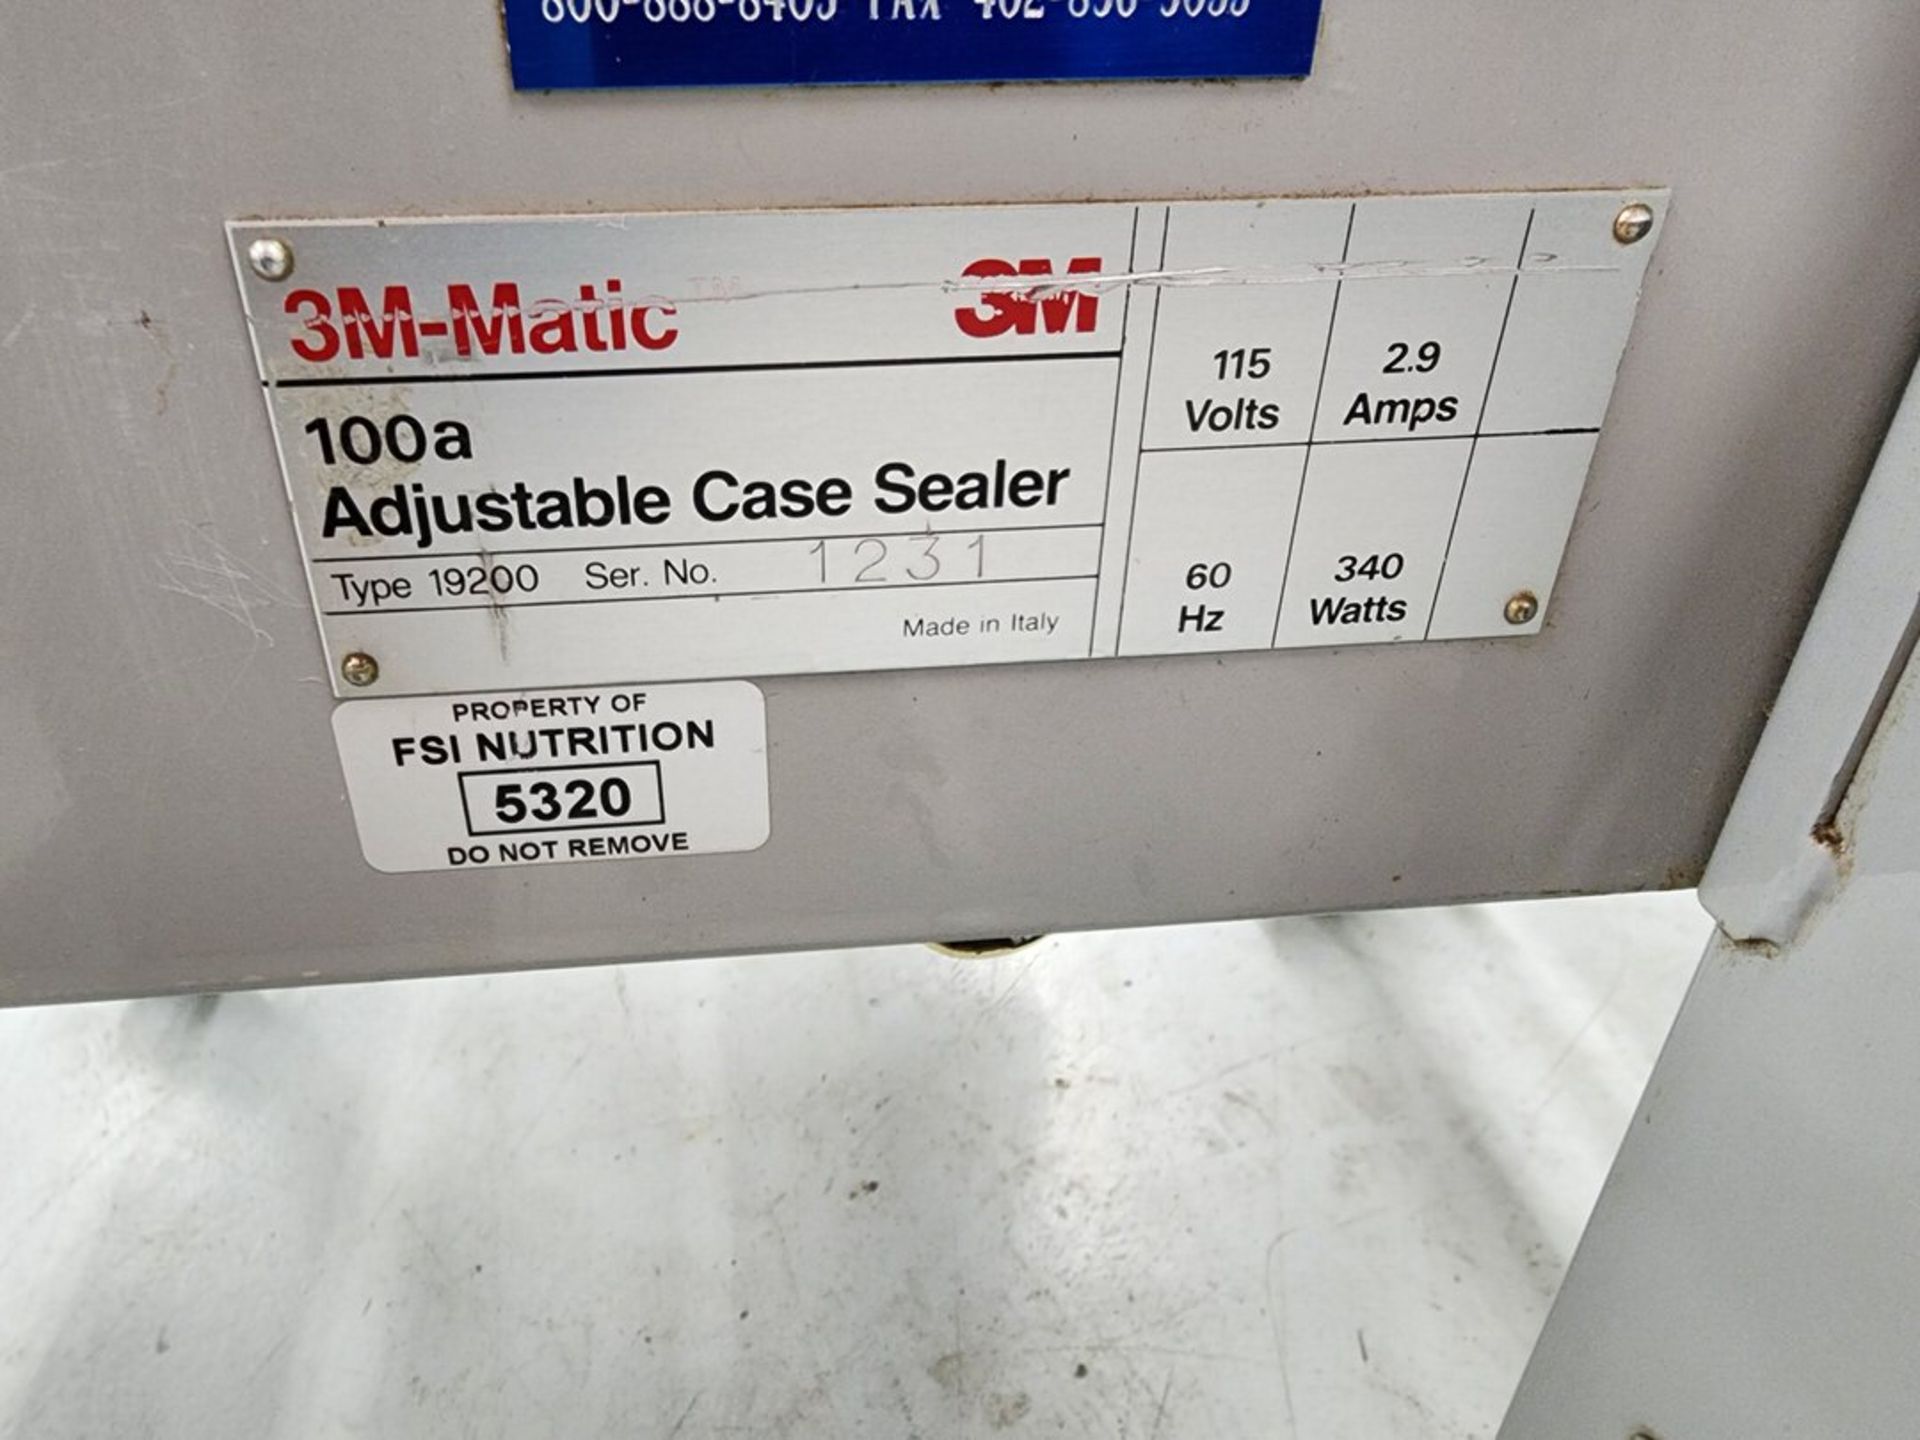 3M 100A Adjustable Case Sealer Machine 115V, 2.9A, 60HZ, 340W - Image 10 of 10